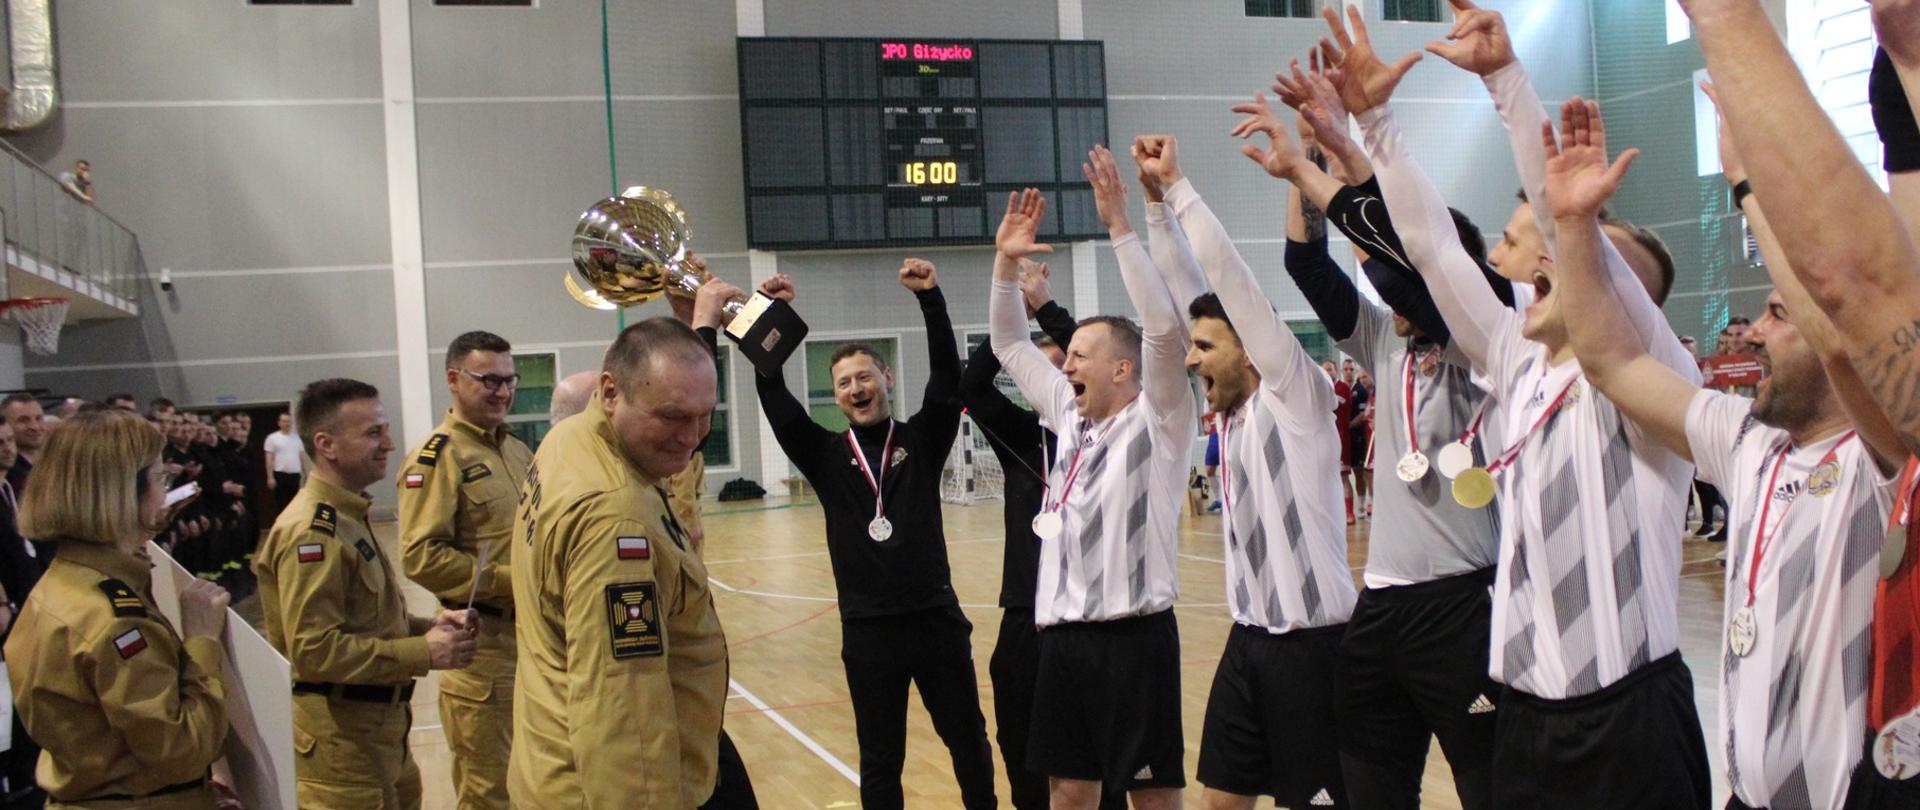 Zwycięska drużyna z KW PSP w Łodzi stojąca w szeregu w trakcie wznoszenia okrzyku radości. 